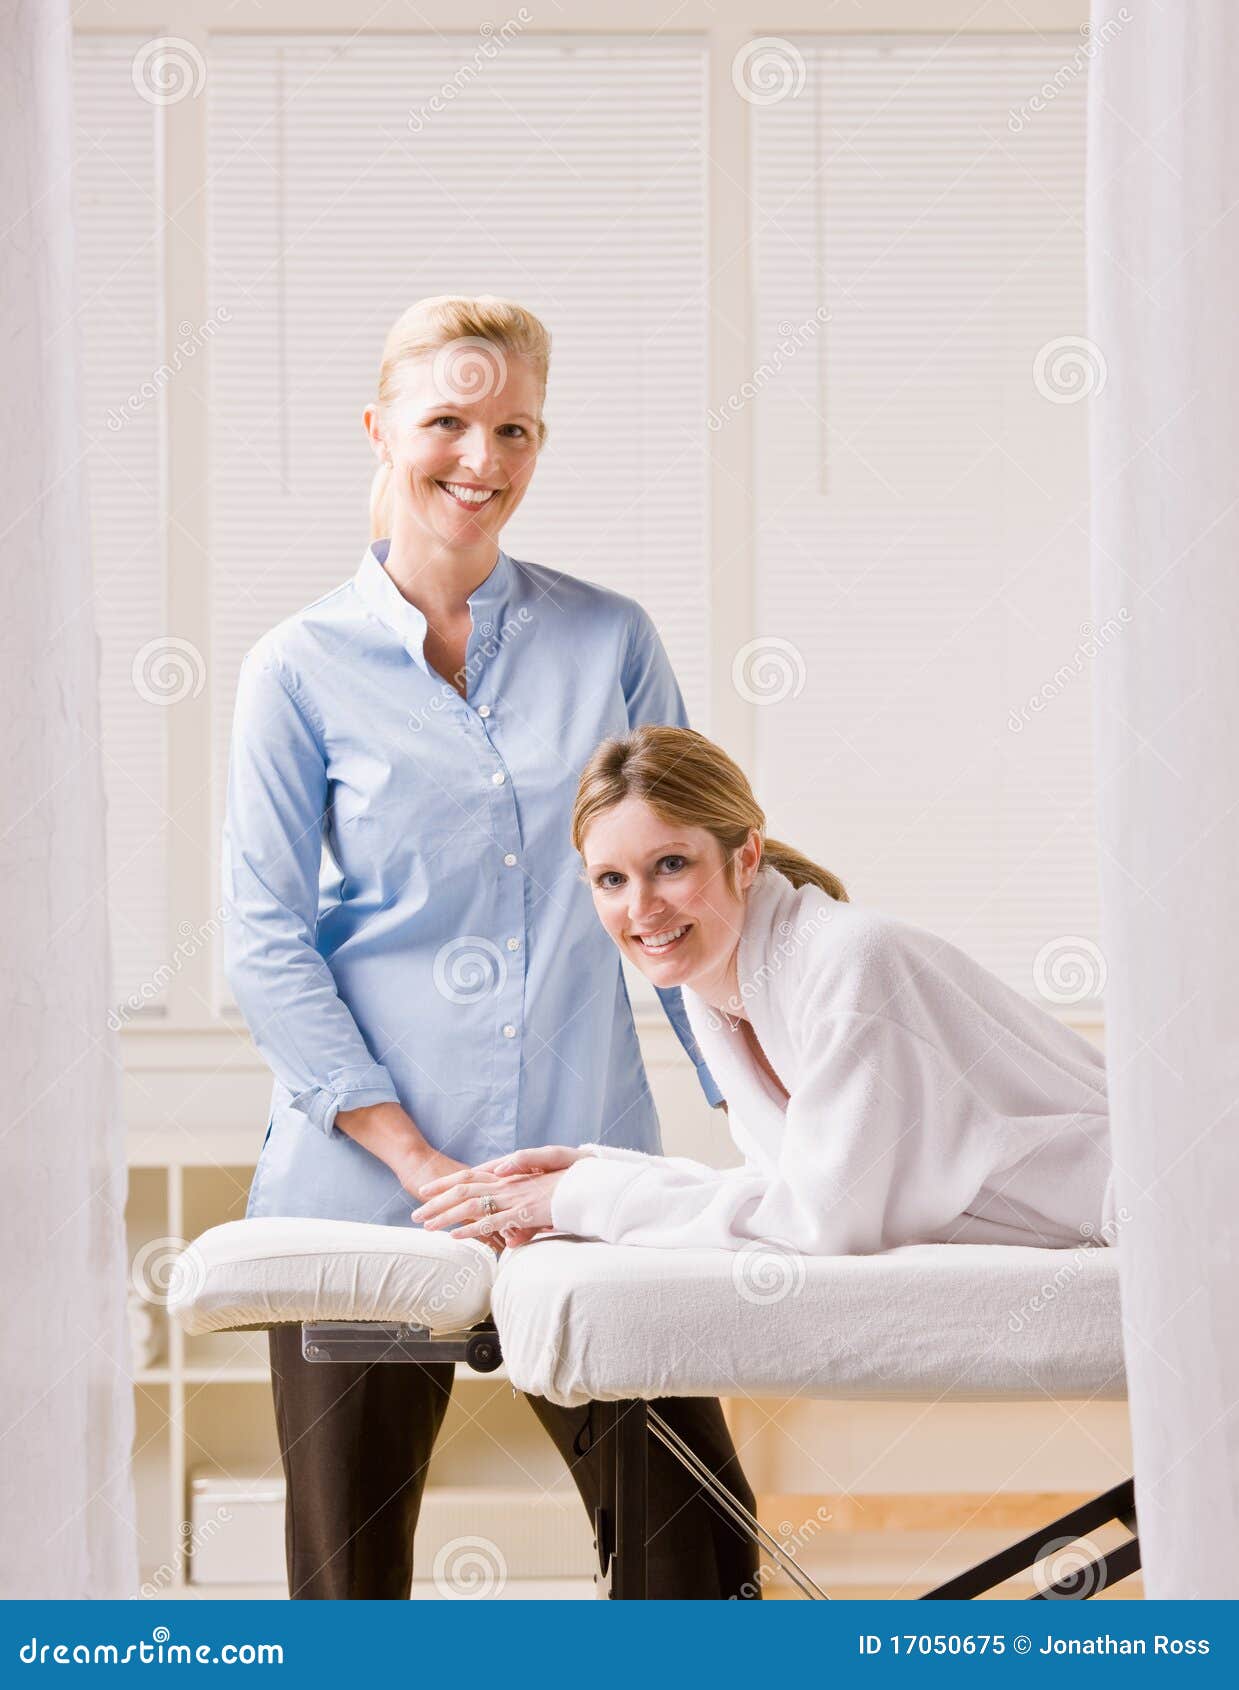 woman and massage therapist